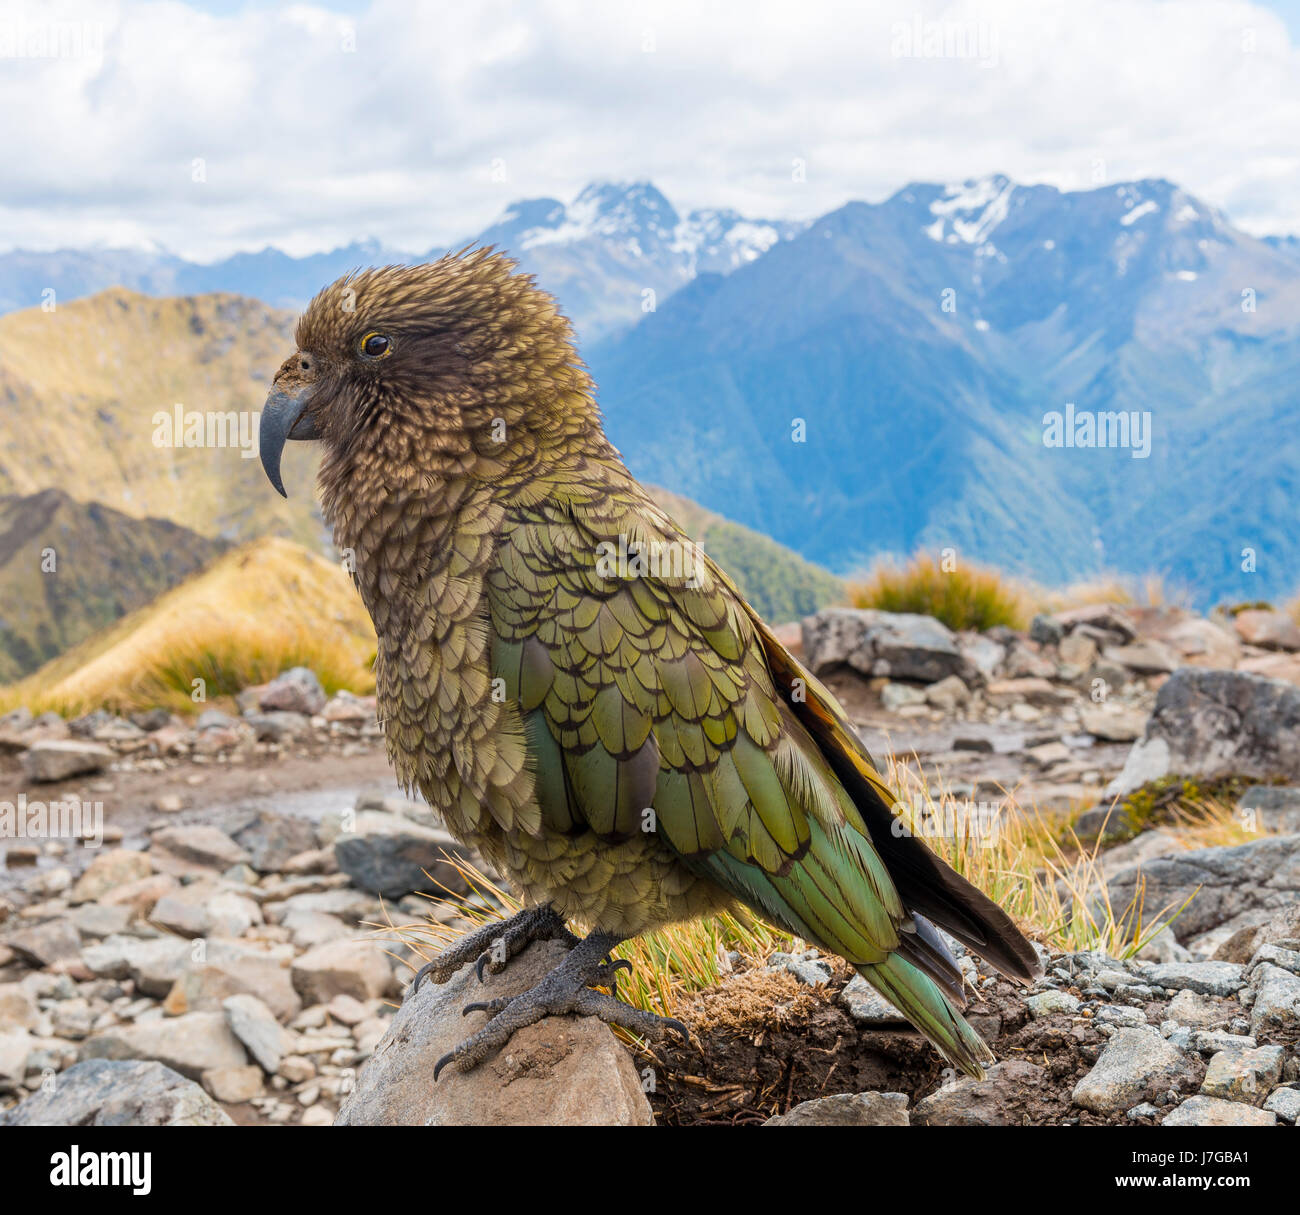 Perroquet de montagne, Kea (Nestor notabilis) dans les montagnes, Kepler Track, Fiordland National Park, South Island, New Zealand Banque D'Images